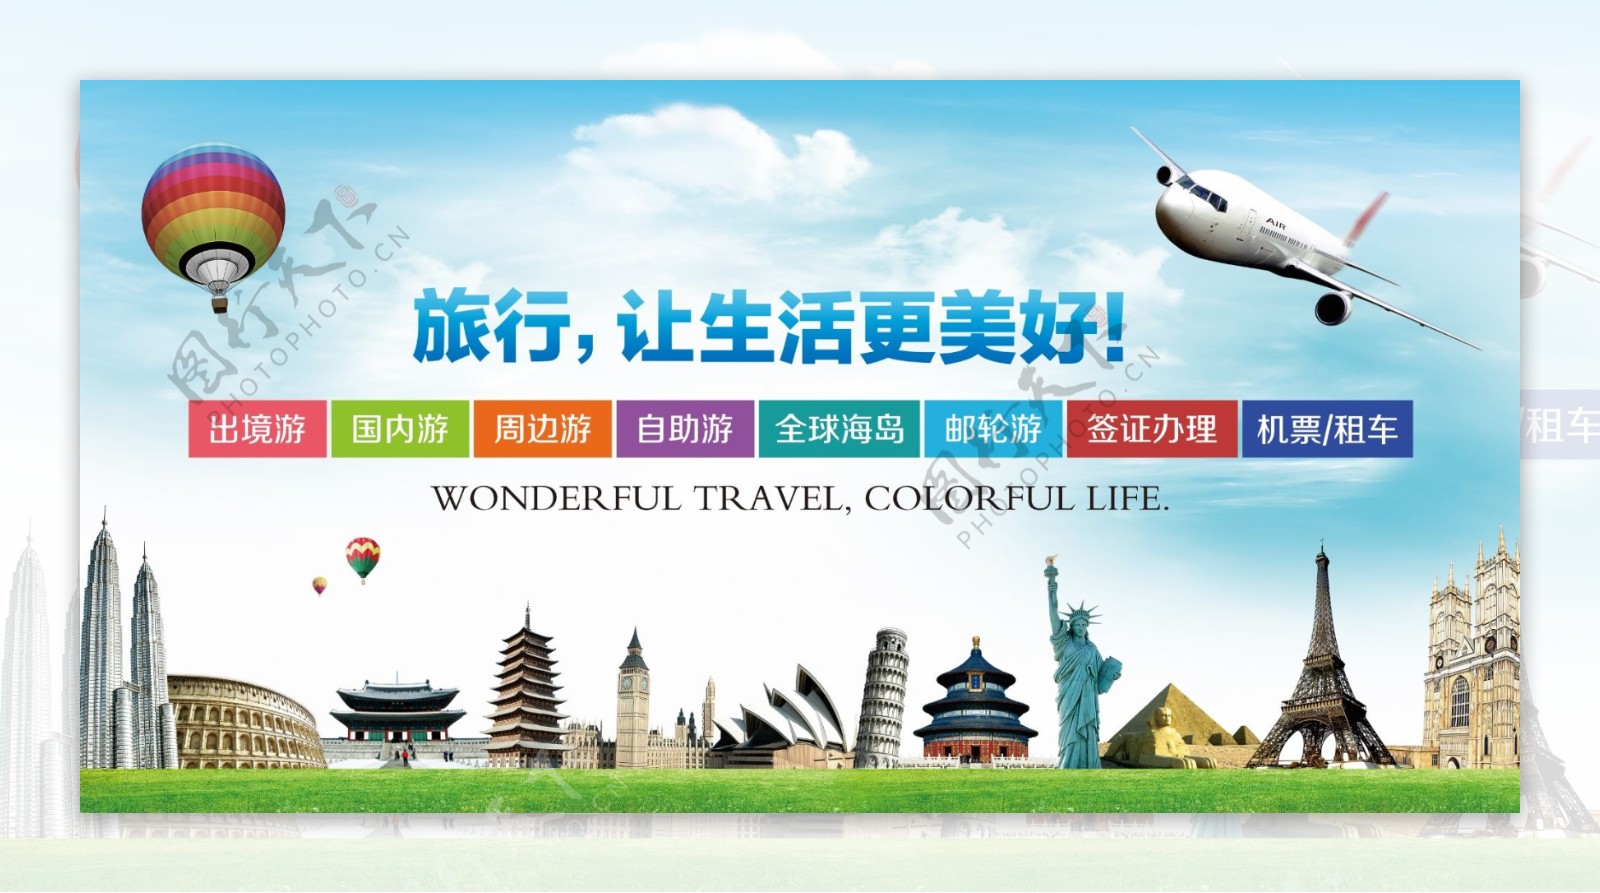 旅游海报旅游展板旅行社宣传图旅行社背景墙